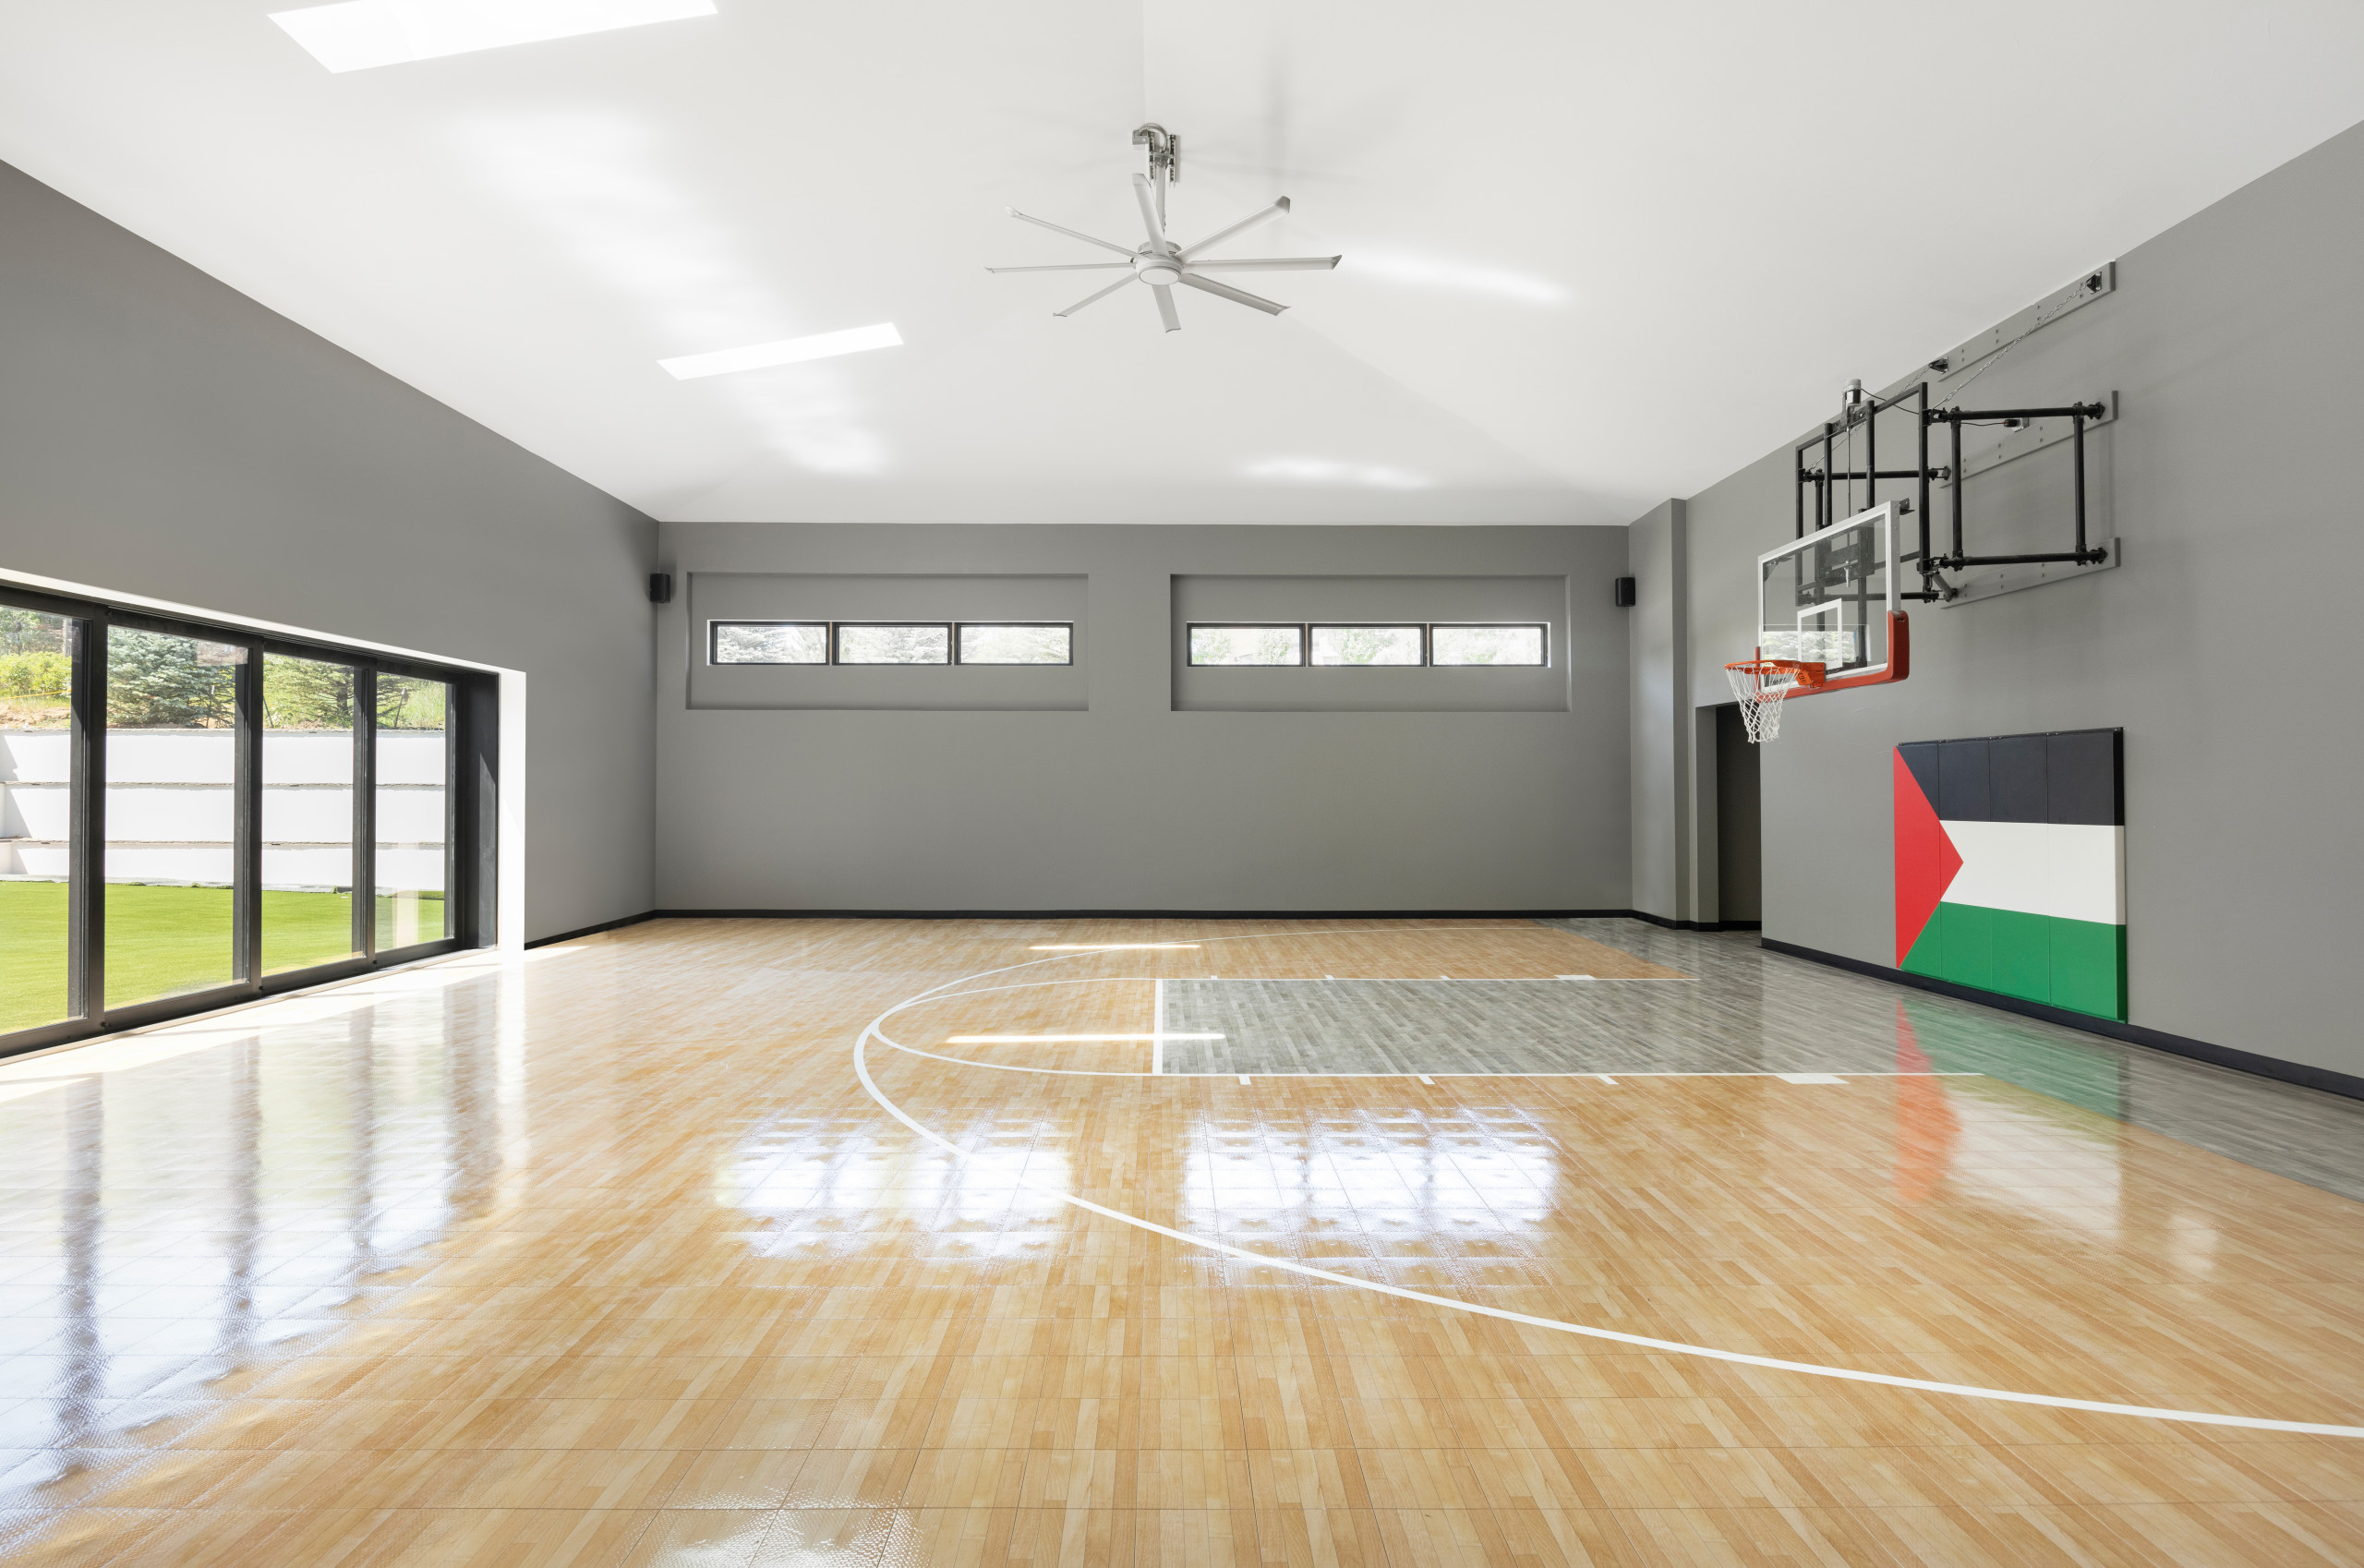 Timeless Wood Basketball Hoop. Indoor Basketball Hoop. Wood 